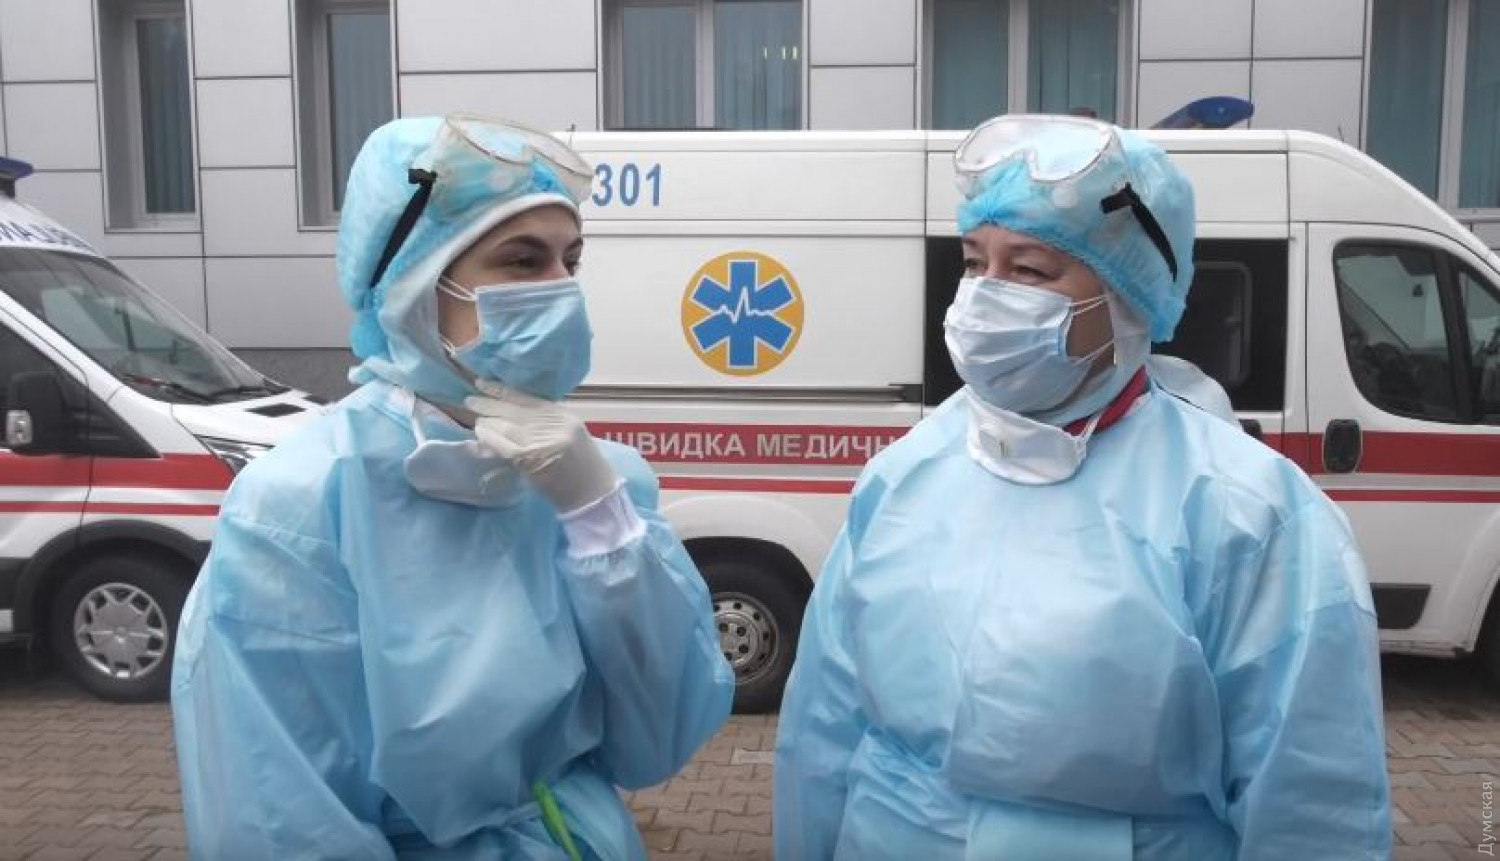 СБУ попередила незаконне вивезення з України майже 40 тисяч медичних халатів. ФОТО